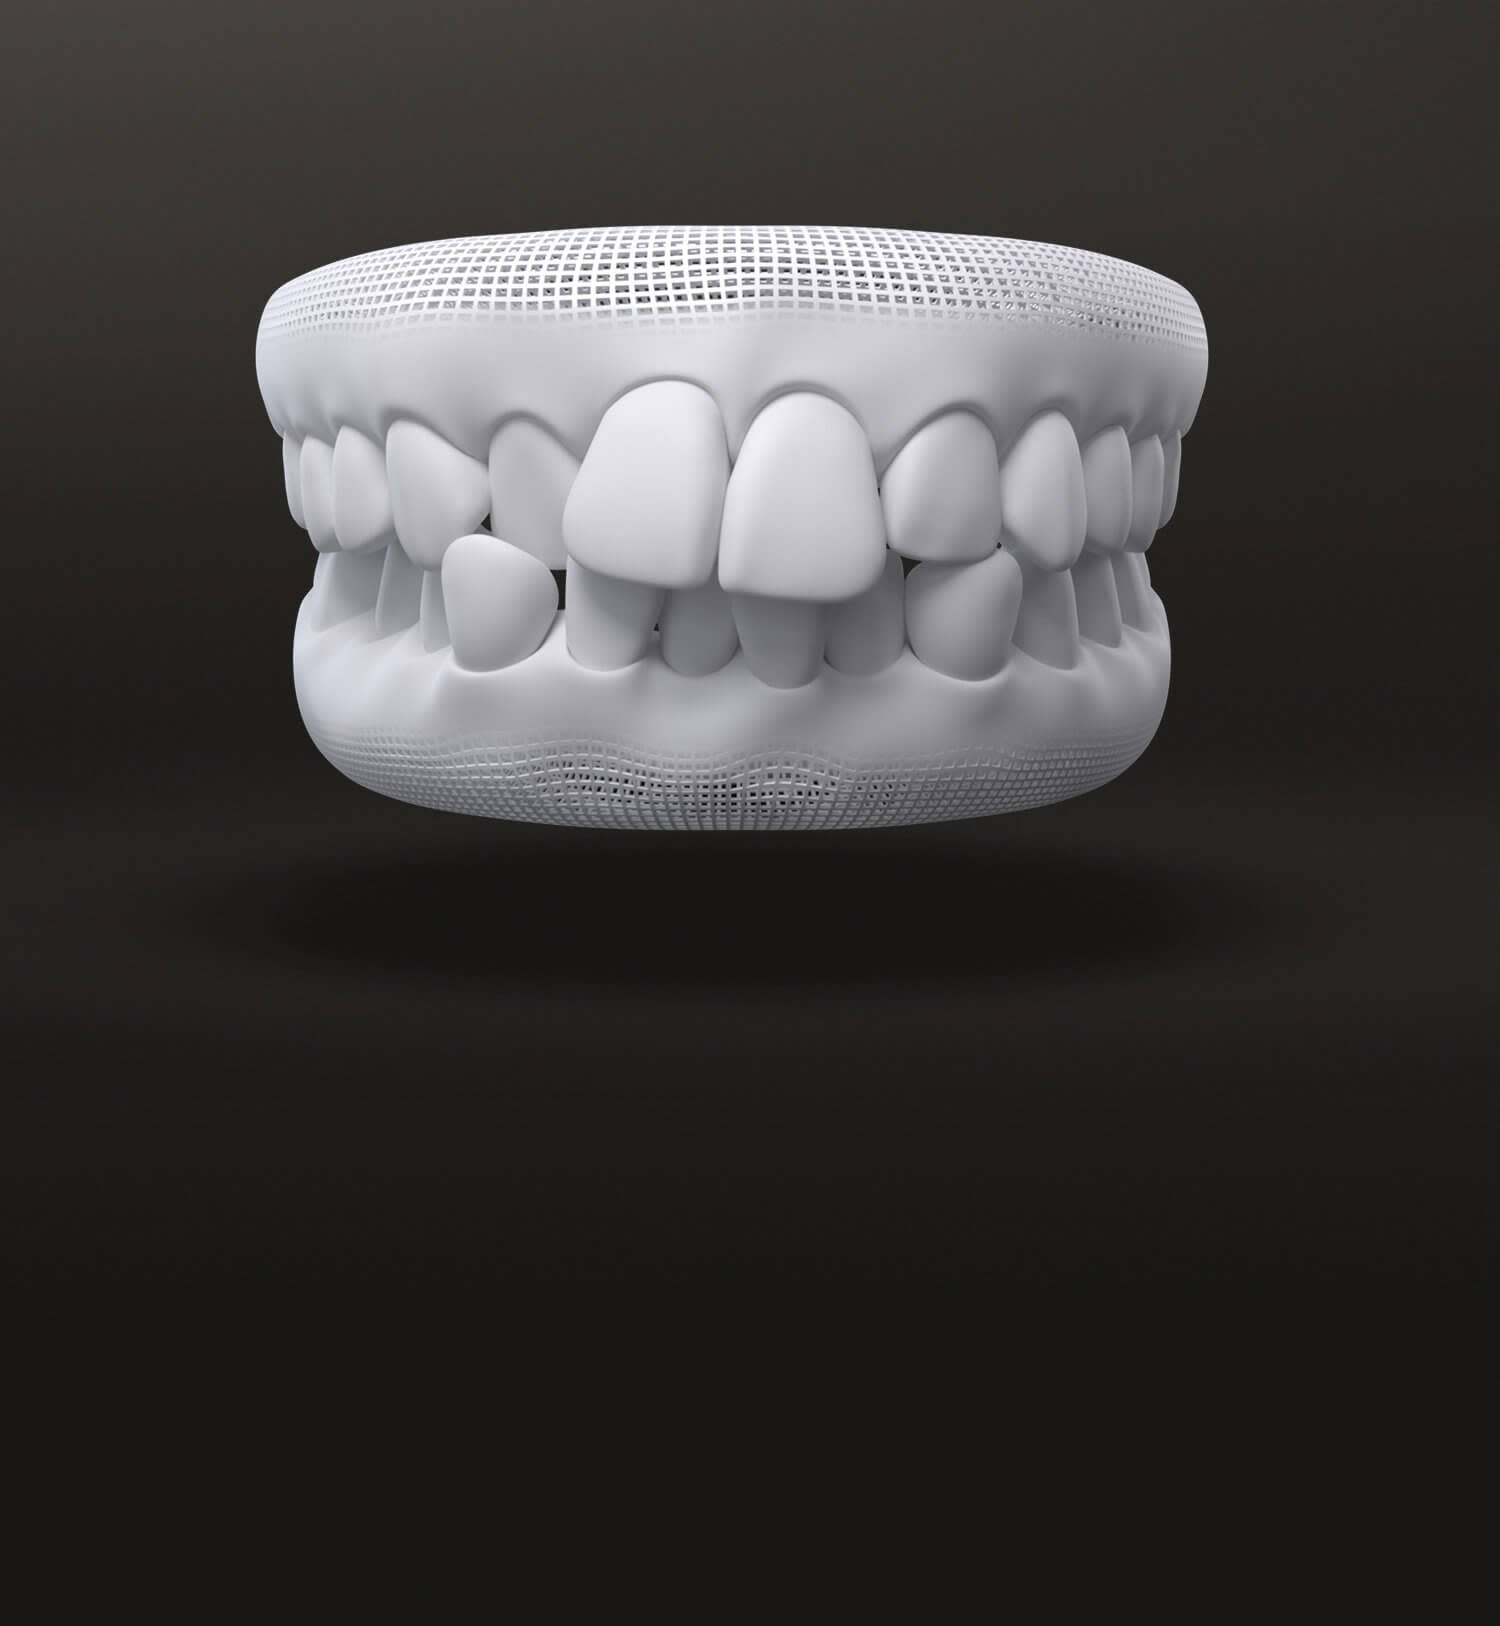 Modello 3D denti affollati: casi trattabili con allineatori dentali Invisalign - Italia